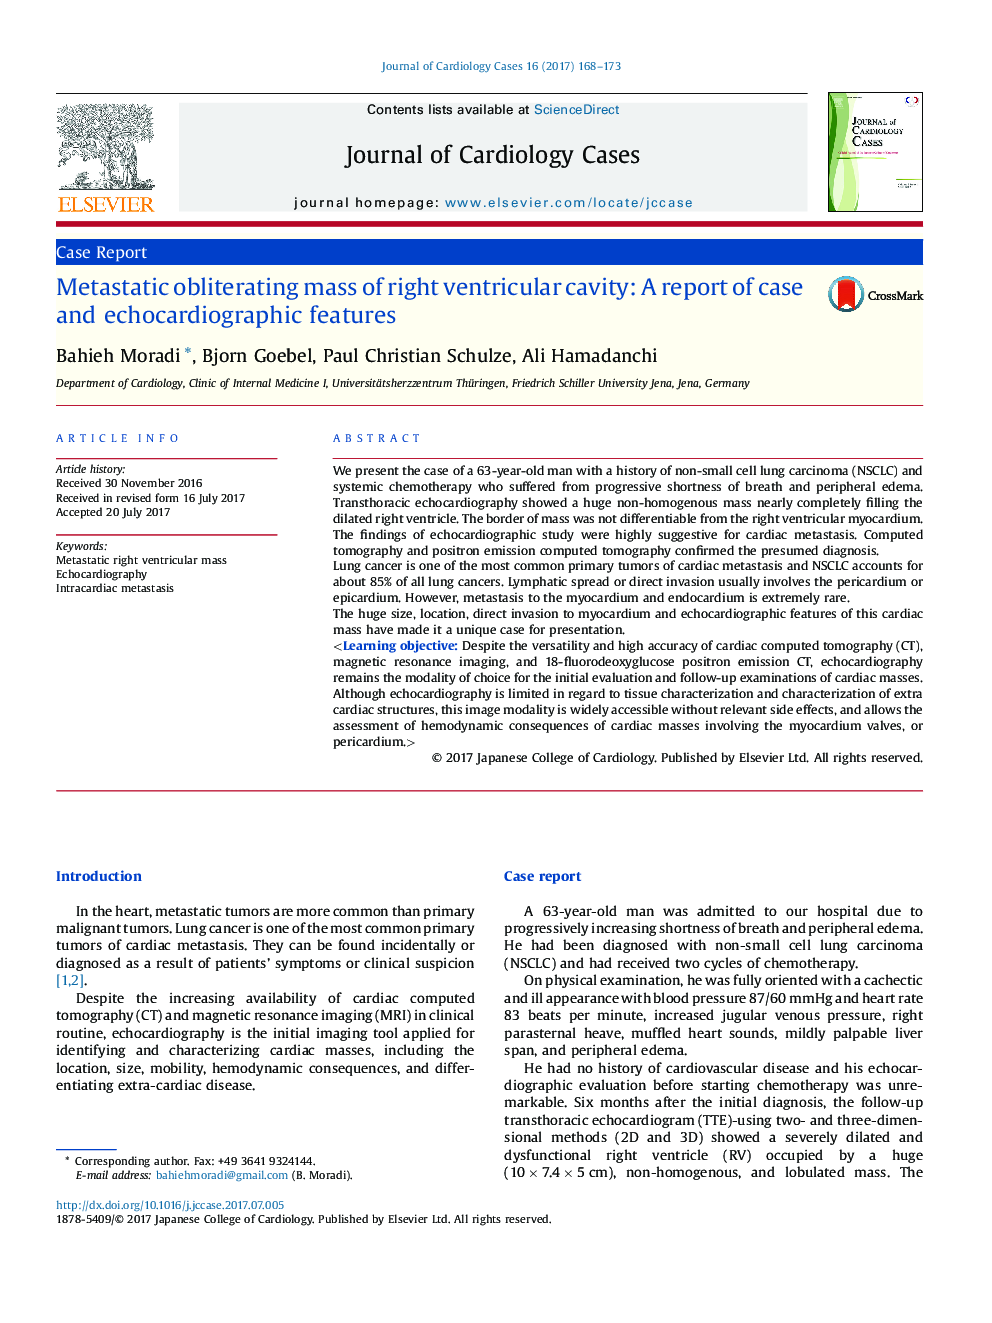 توده تخلیه متاستاتیک حفره سمت راست بطن: گزارش مورد و ویژگی های اکوکاردیوگرافی 